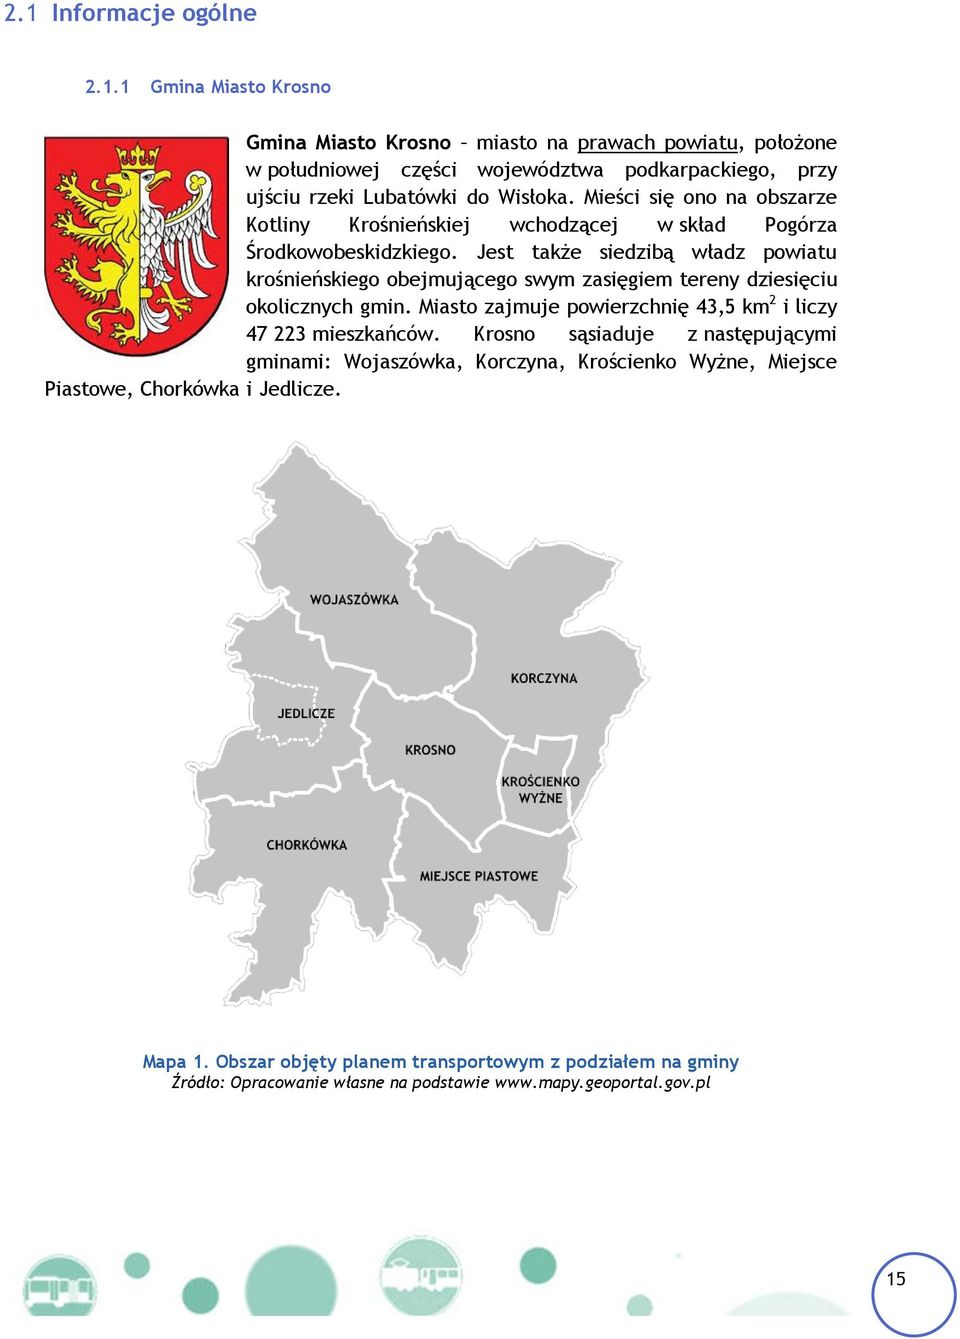 Jest także siedzibą władz powiatu krośnieńskiego obejmującego swym zasięgiem tereny dziesięciu okolicznych gmin. Miasto zajmuje powierzchnię 43,5 km 2 i liczy 47 223 mieszkańców.